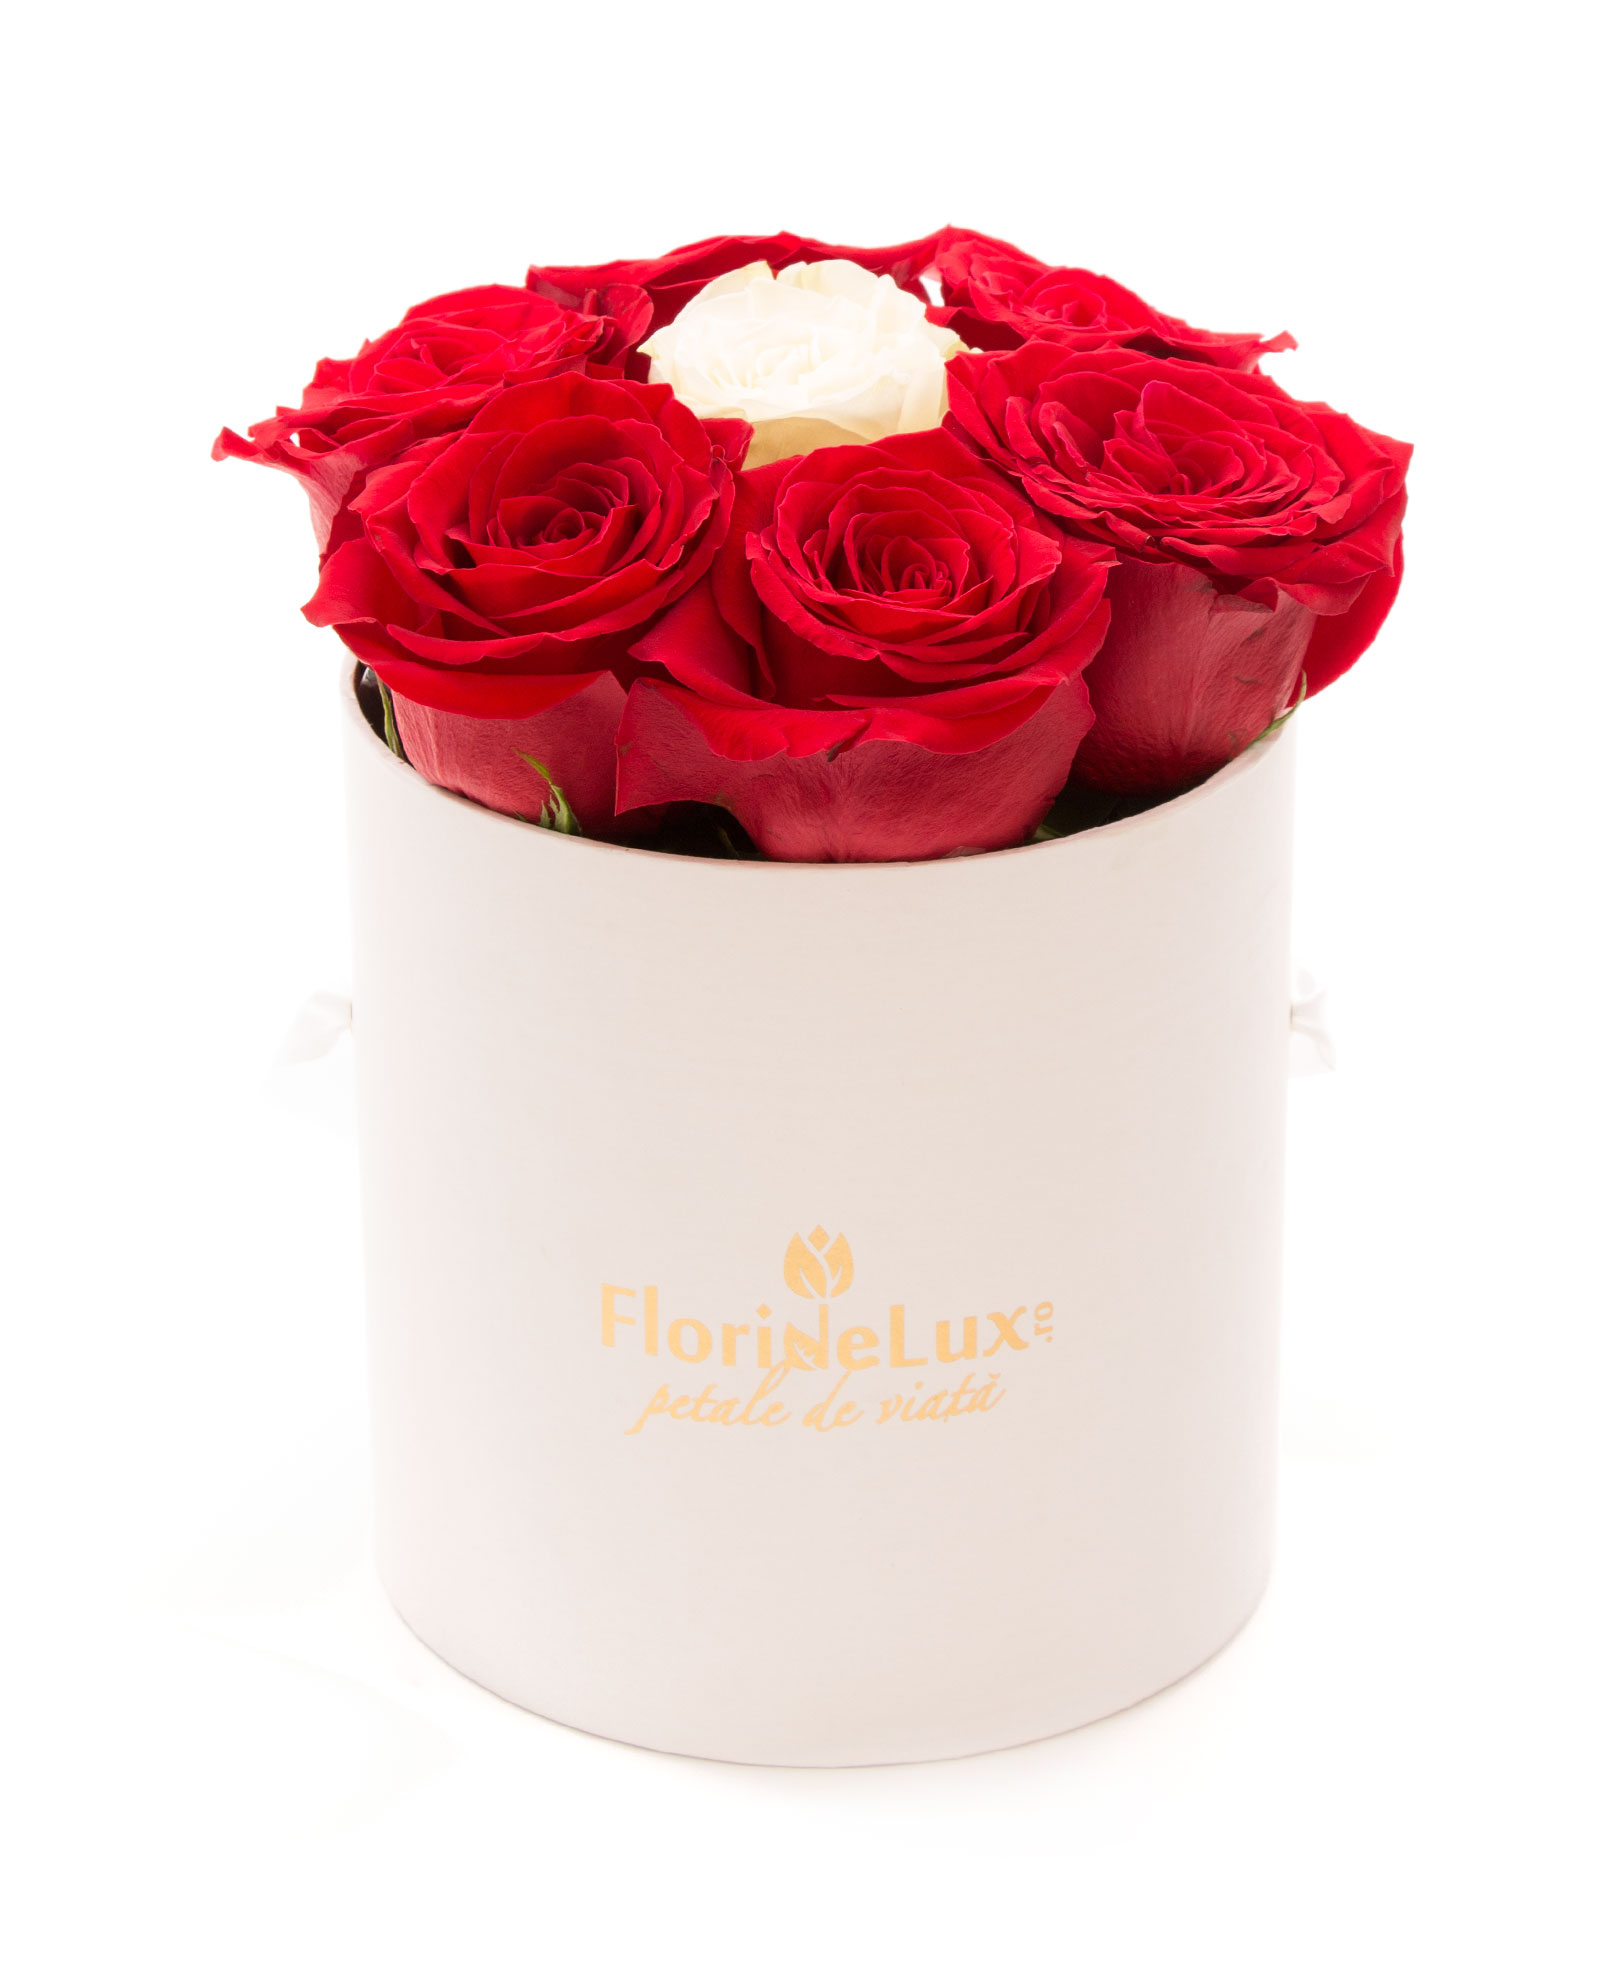 Cutie 9 trandafiri rosii si unul alb si Chimney Rock